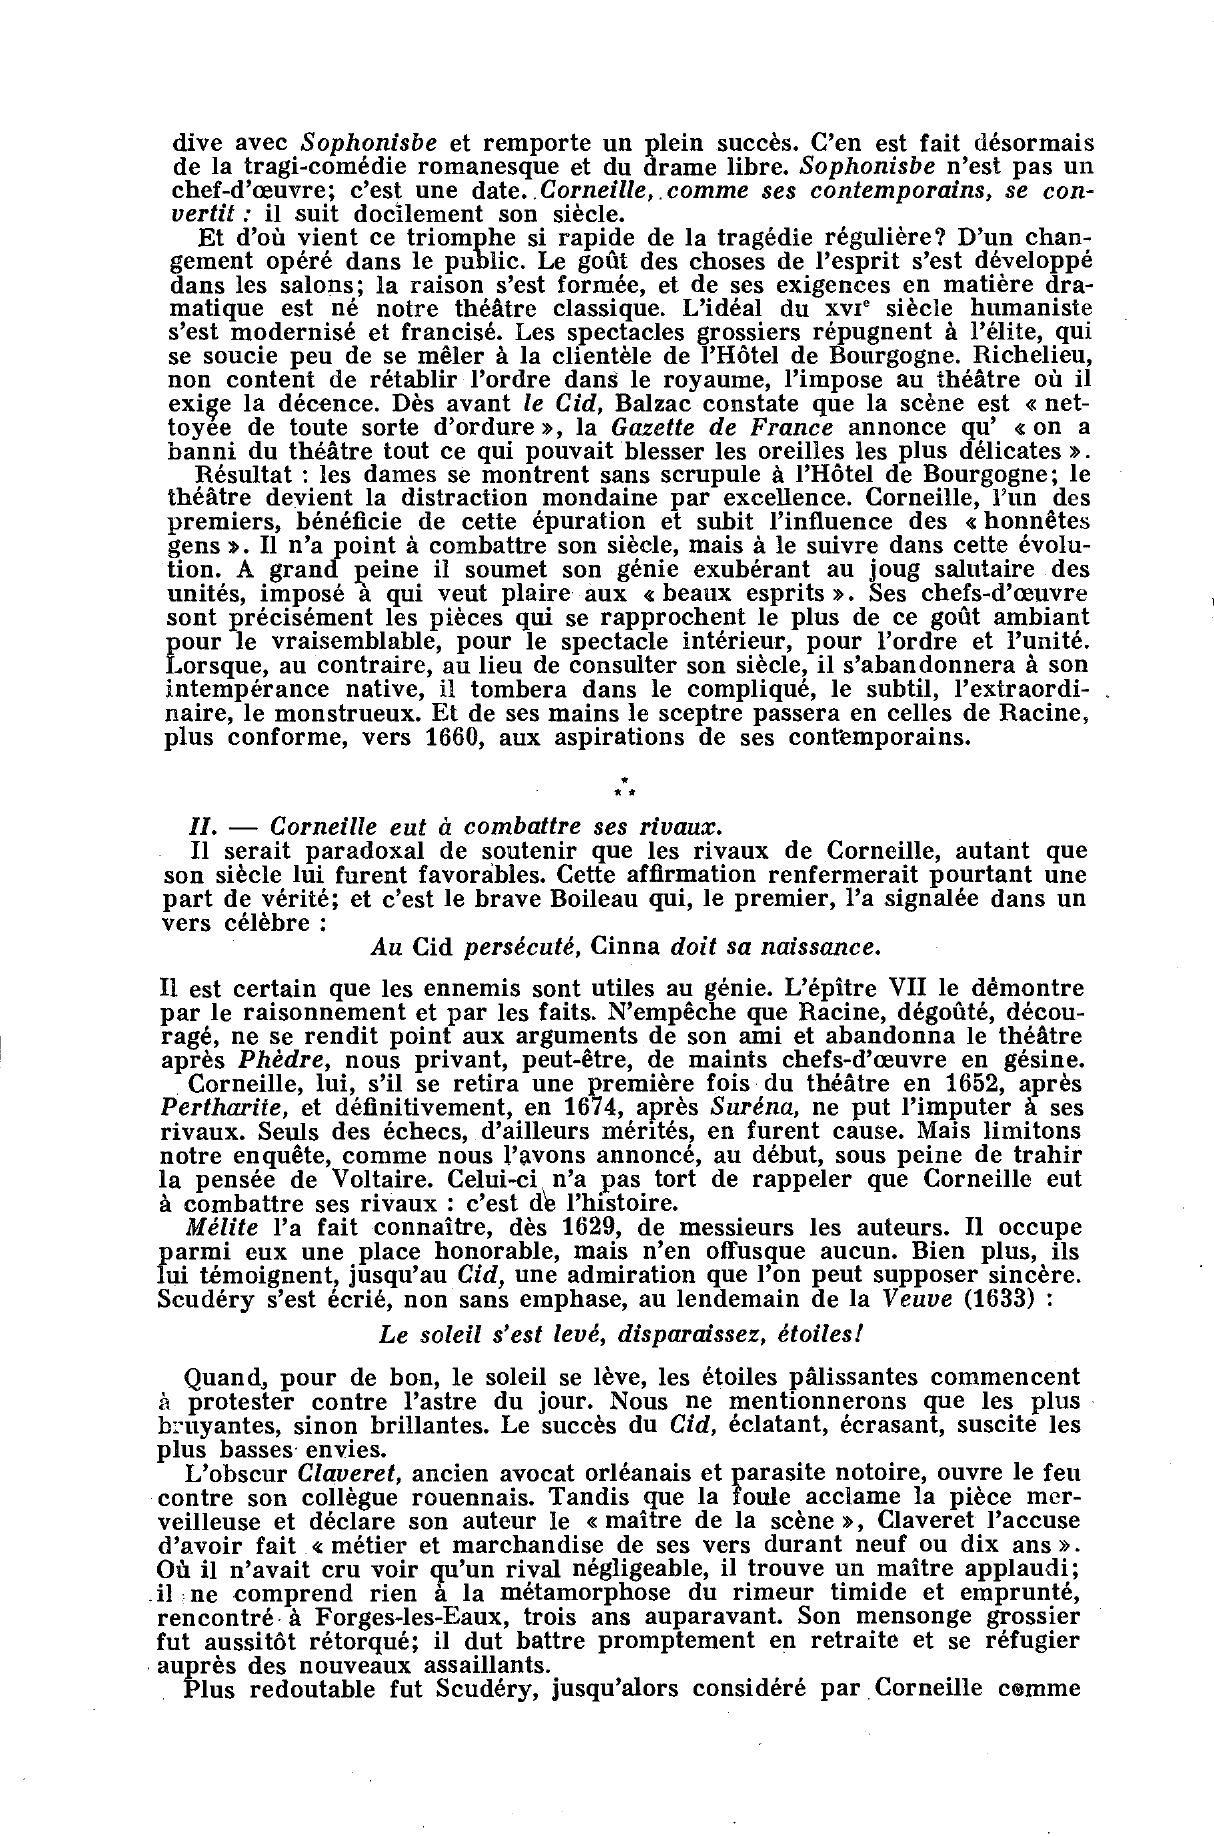 Prévisualisation du document Commentez ce jugement de Voltaire: Corneille eut à combattre son siècle, ses rivaux et le Cardinal de Richelieu.